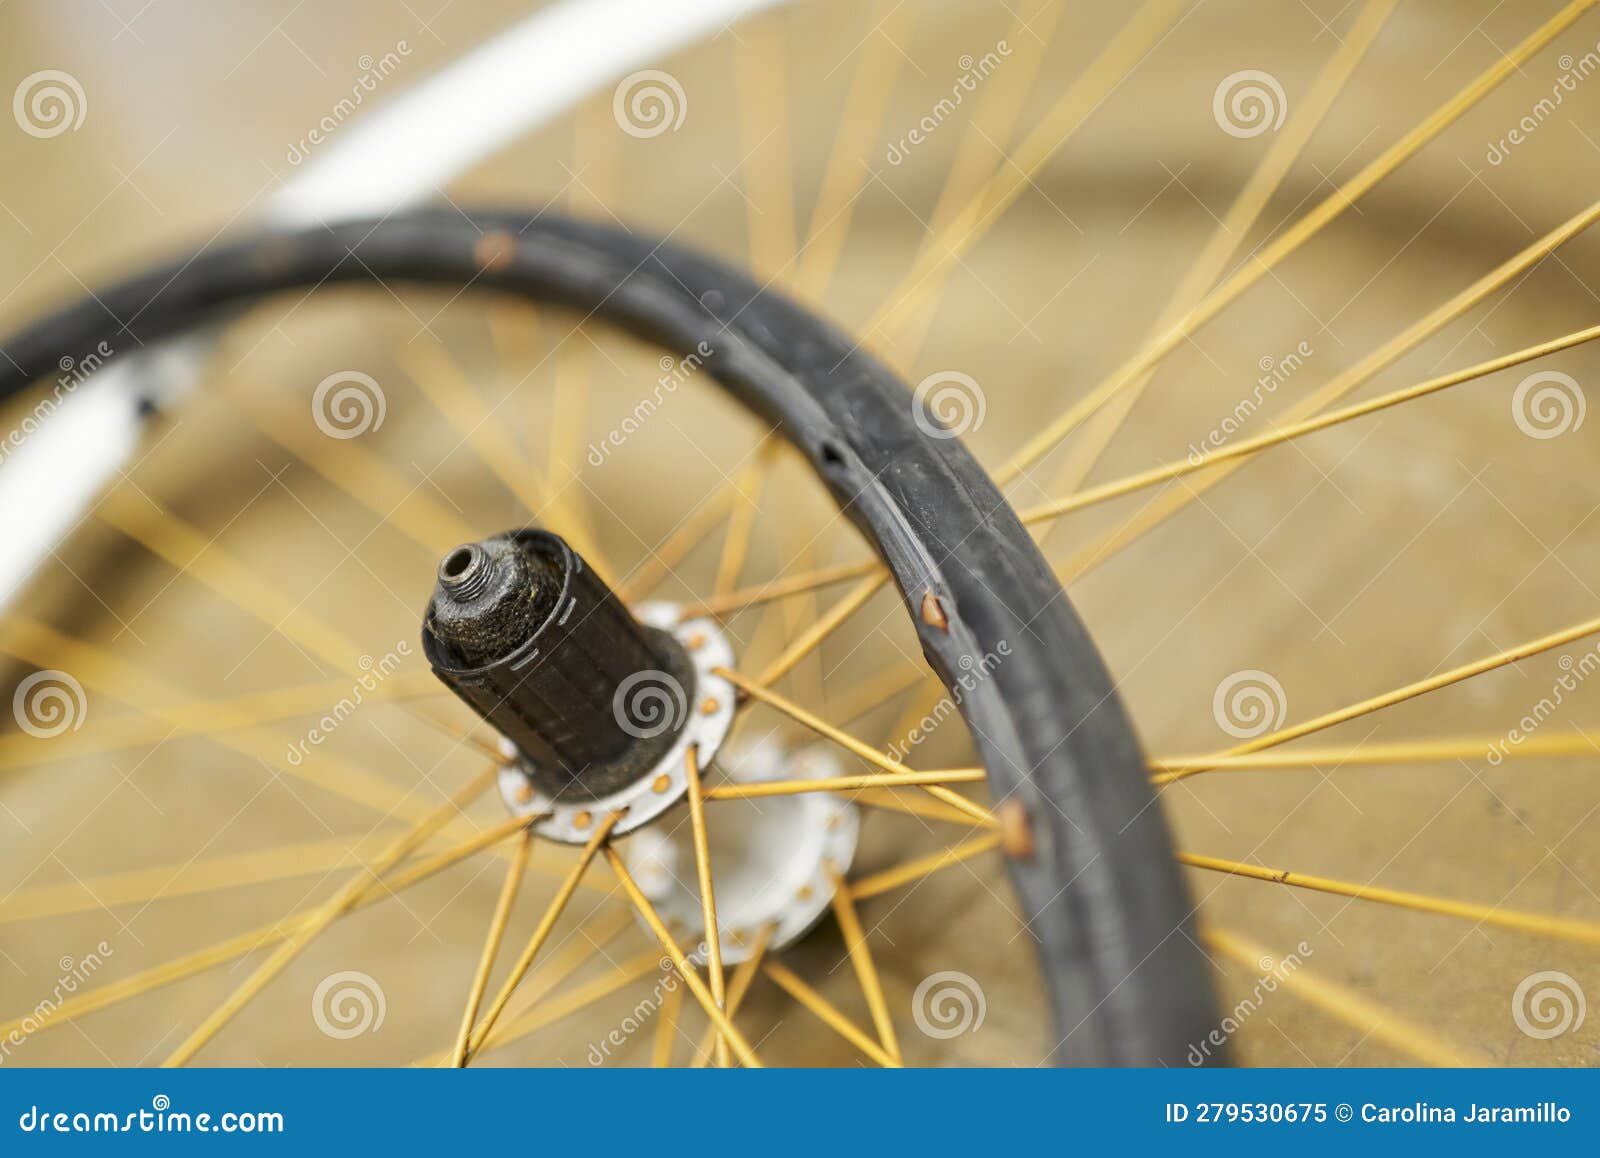 Démonte pneu noir pour vélo vintage